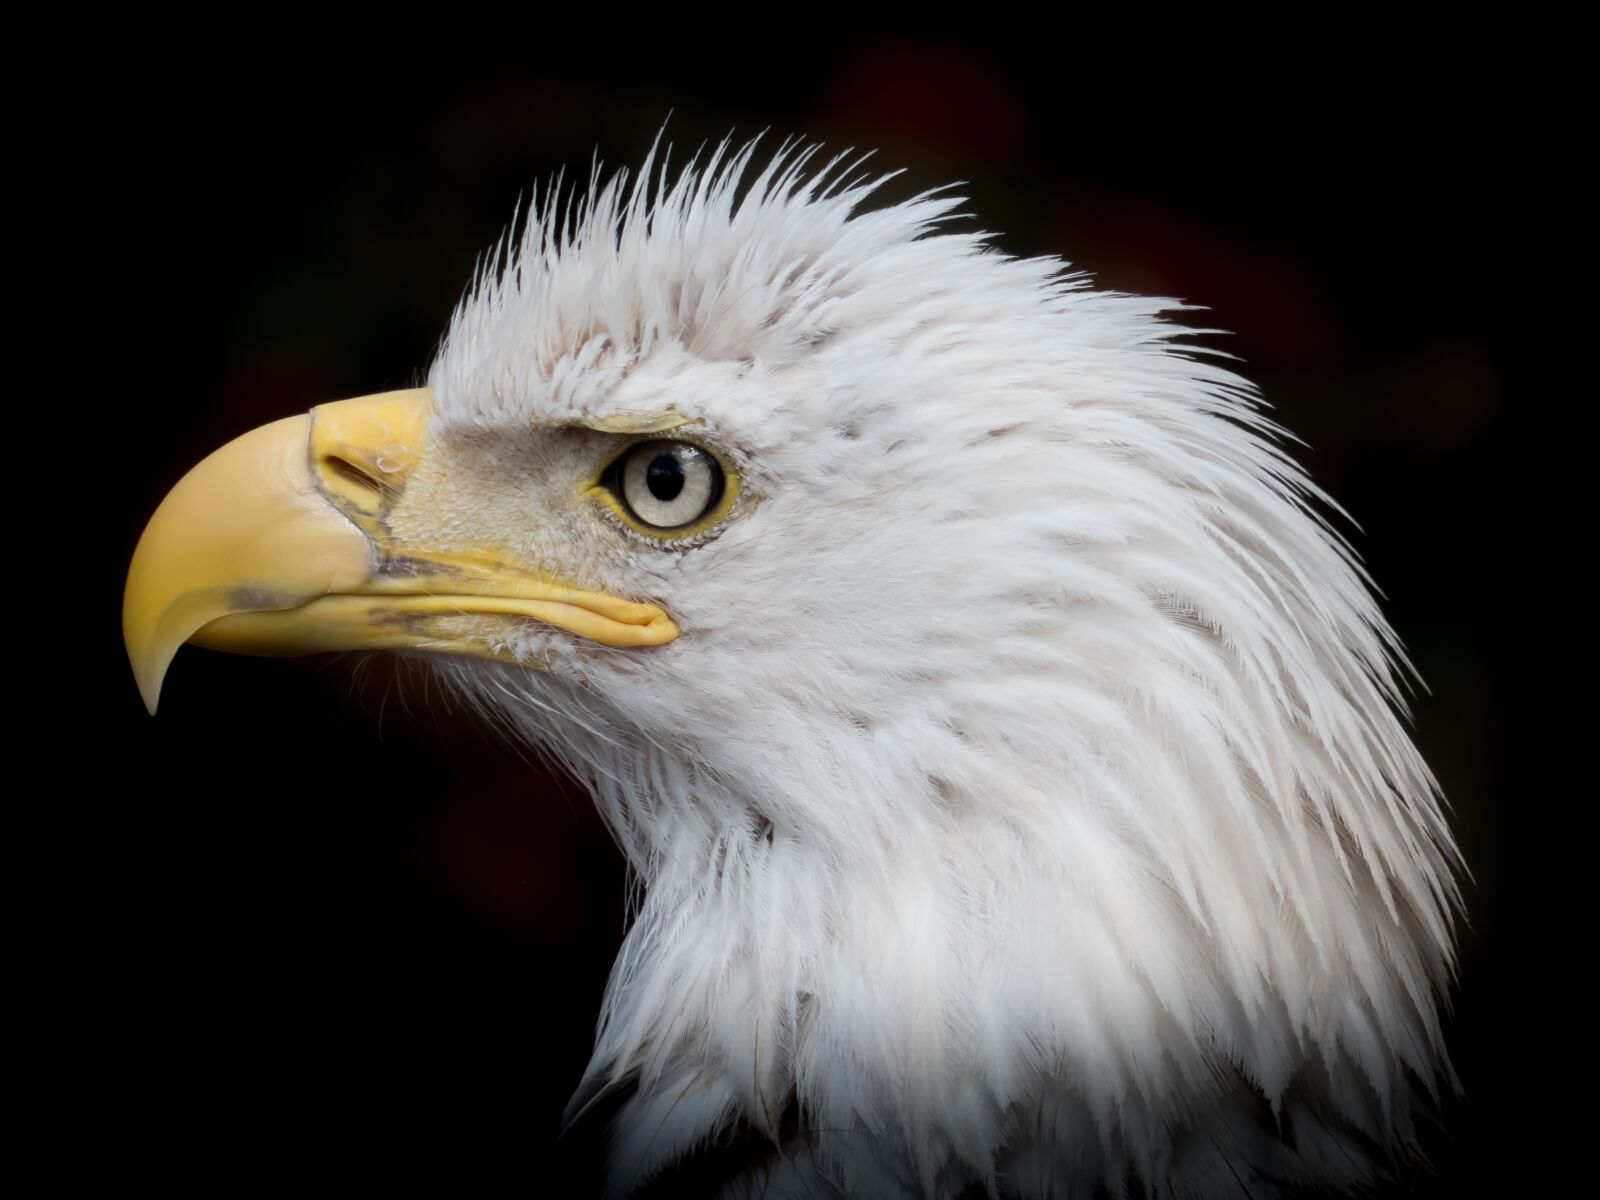 Panasonic Lumix DMC-FZ300 sample photo. Portrait, white tailed eagle photography